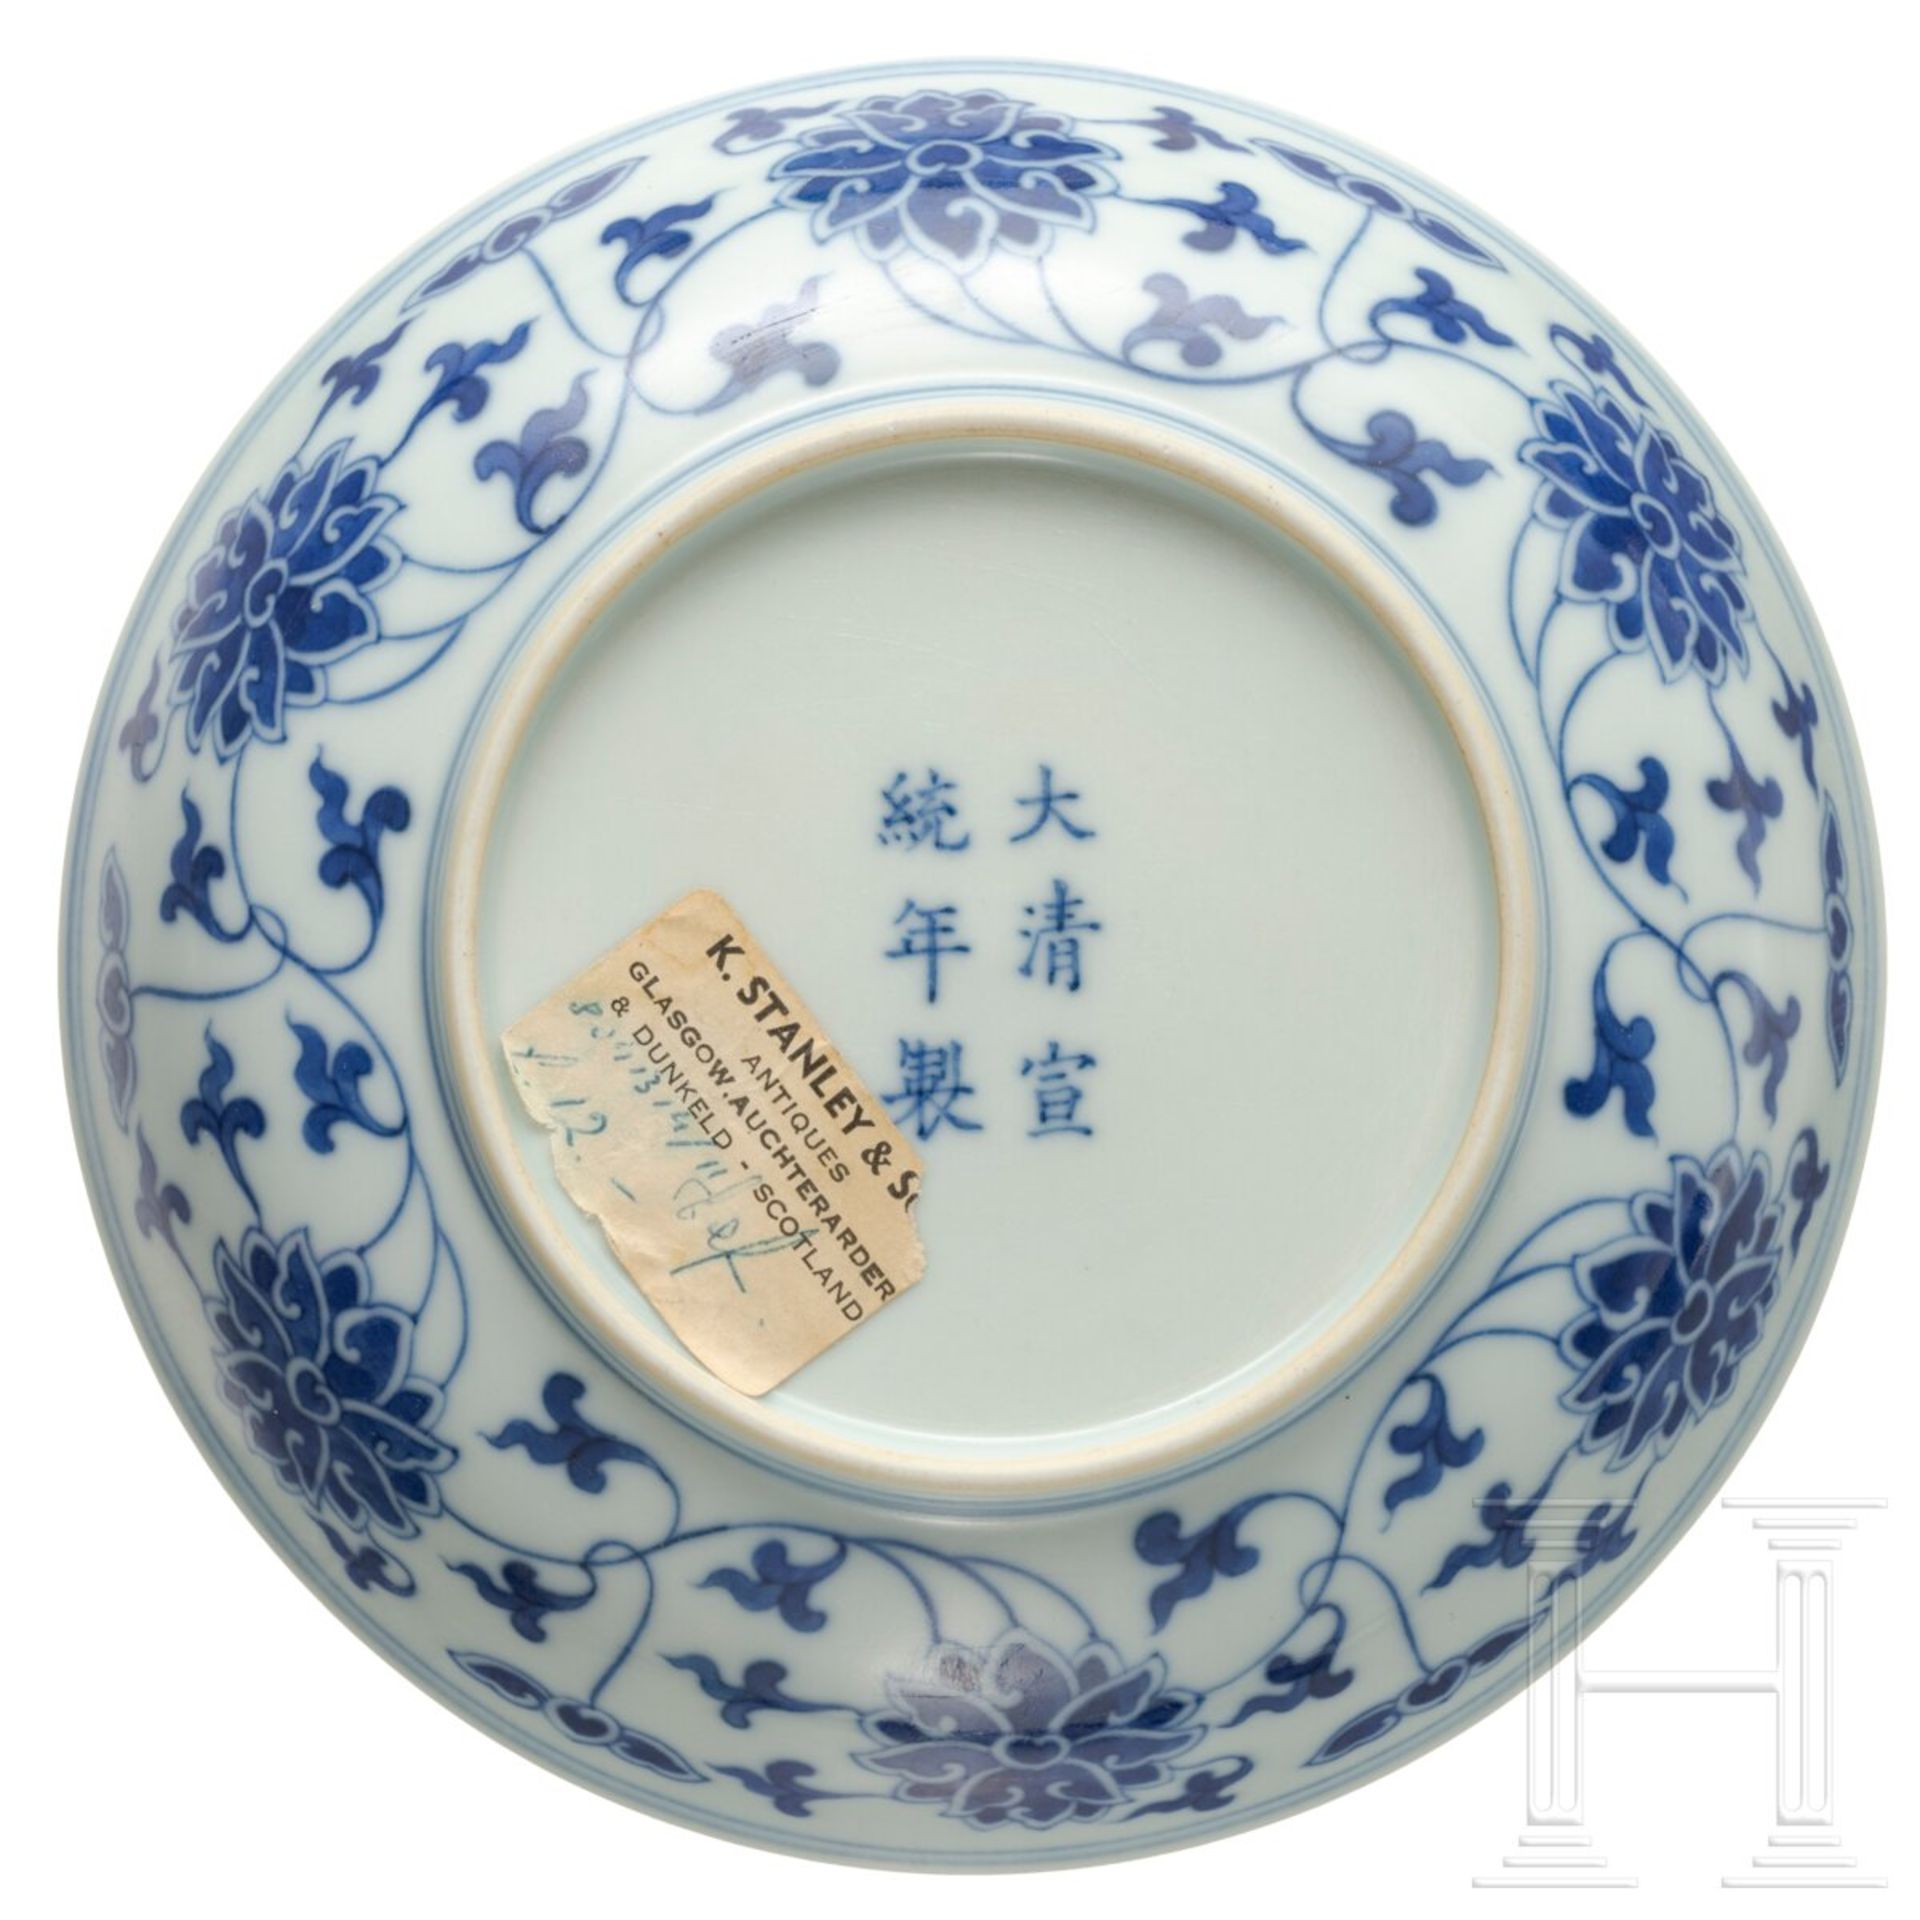 Blau-weiße Schale mit Xuantong-Marke, China, 1908-12 - Bild 3 aus 4